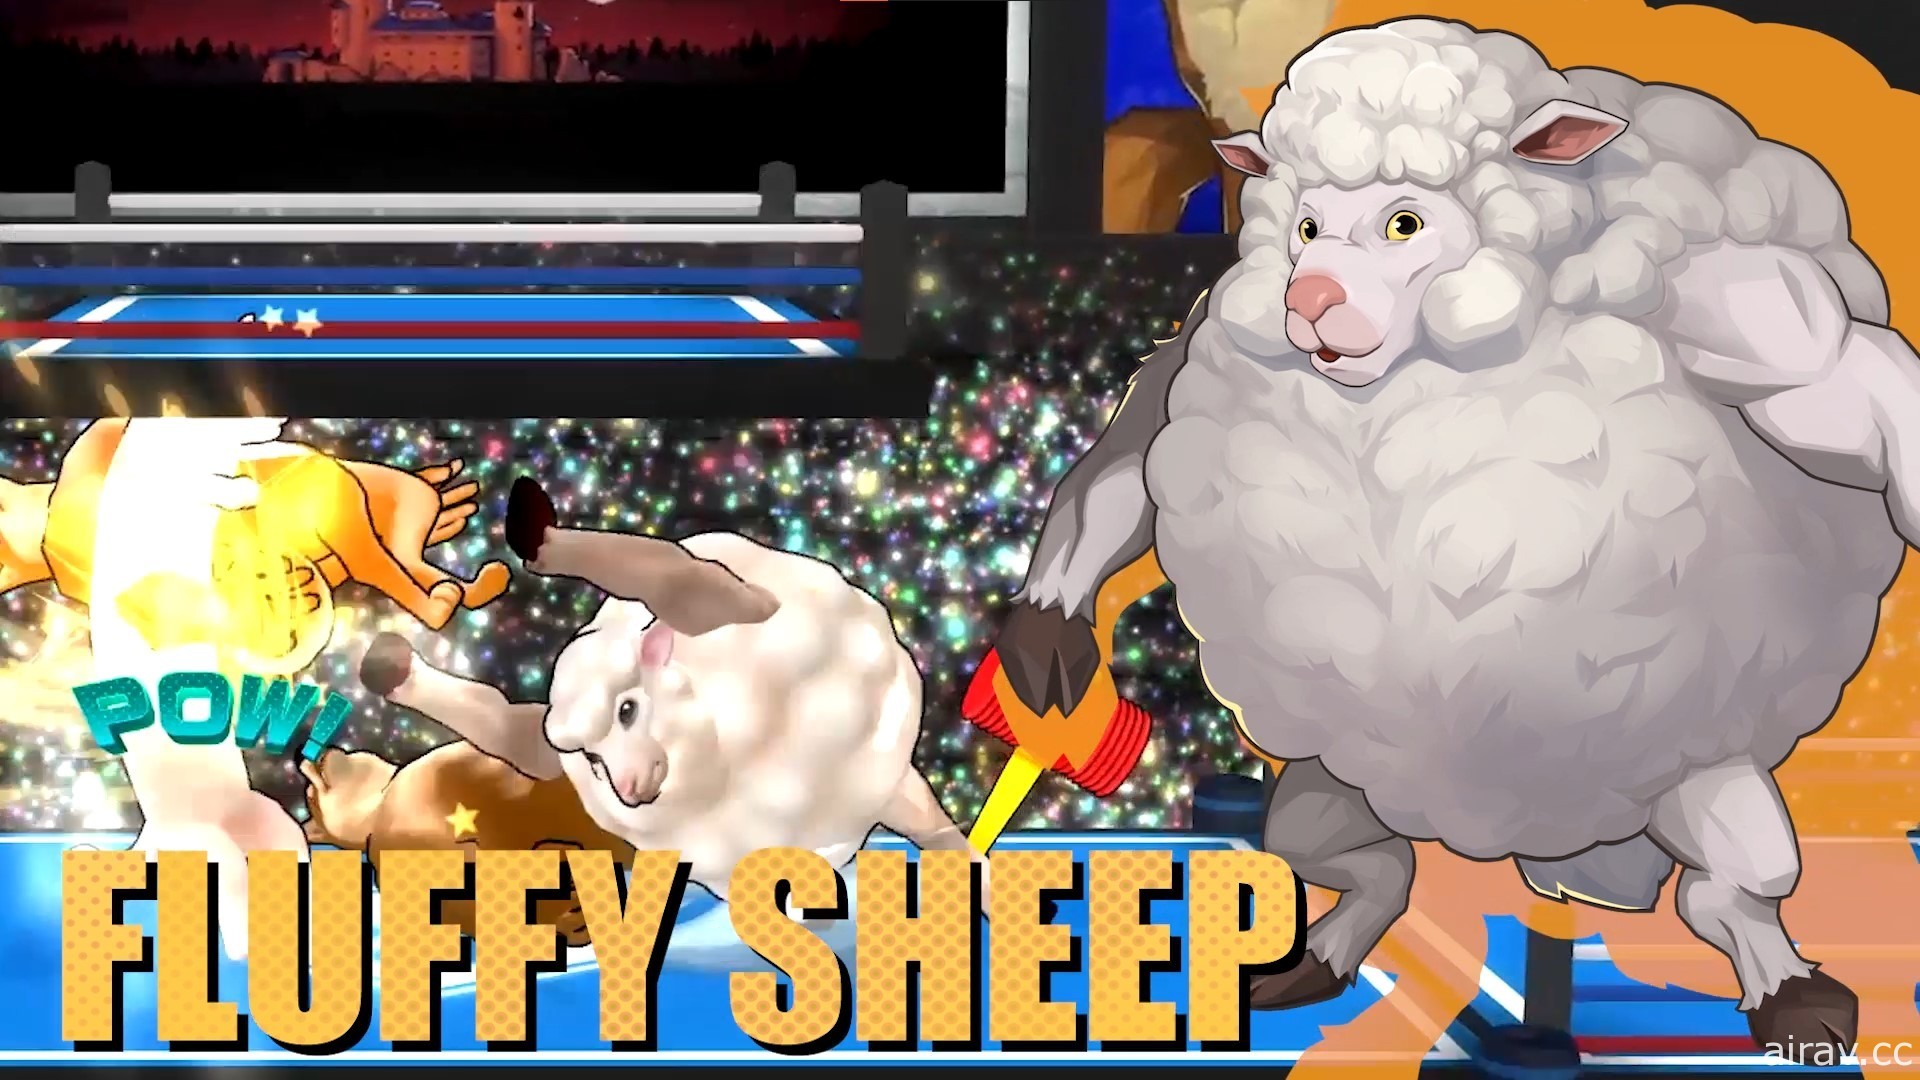 《動物之鬪：競技場》正式揭曉新登場角色「咩噗羊」 蓬鬆羊毛下藏著一身健壯肌肉